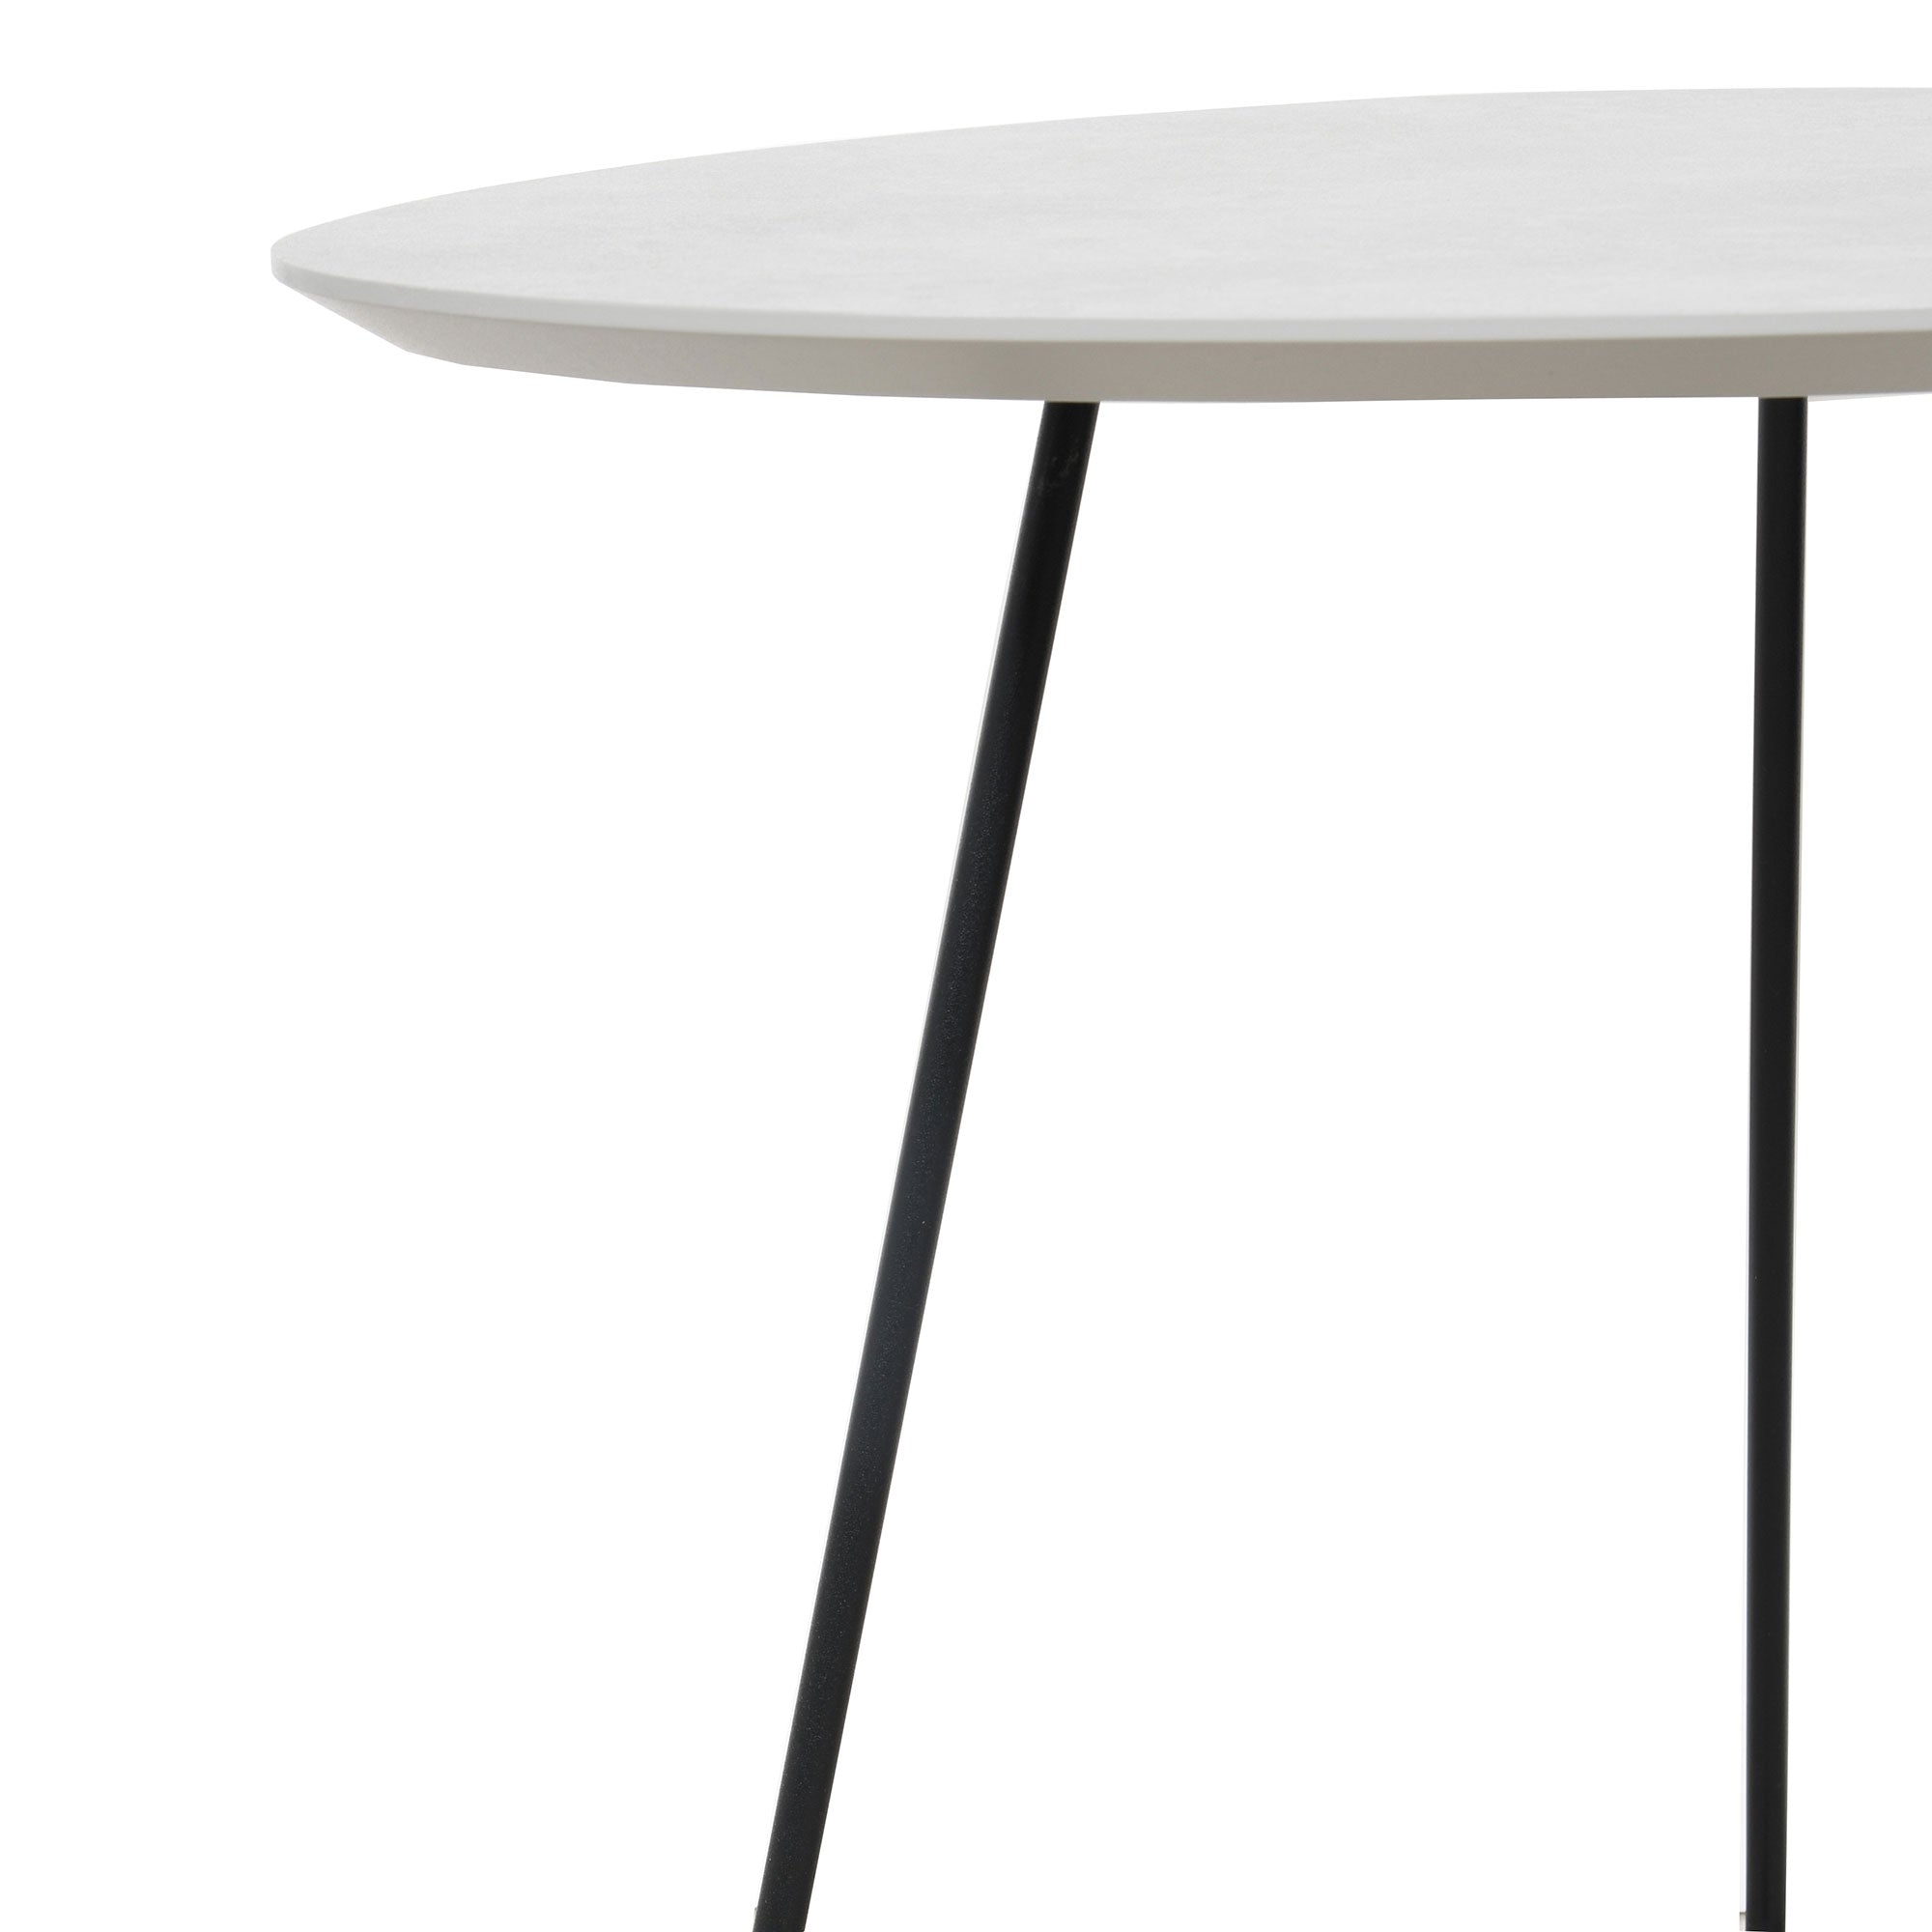 58x55cm End Table In Alu Grey 0026GA Black Frame